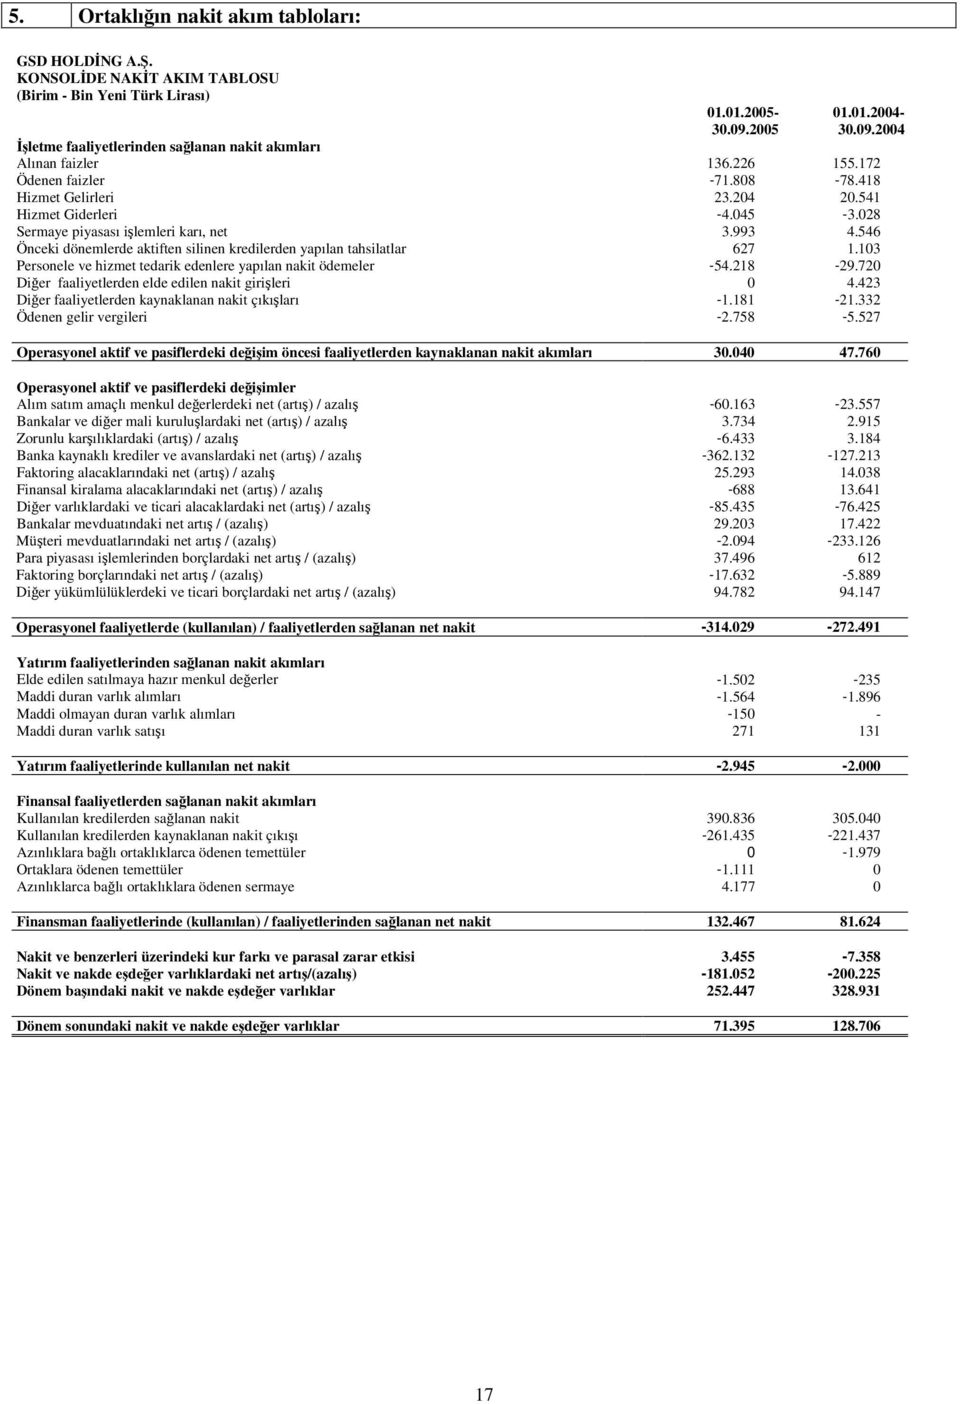 028 Sermaye piyasası ilemleri karı, net 3.993 4.546 Önceki dönemlerde aktiften silinen kredilerden yapılan tahsilatlar 627 1.103 Personele ve hizmet tedarik edenlere yapılan nakit ödemeler -54.218-29.